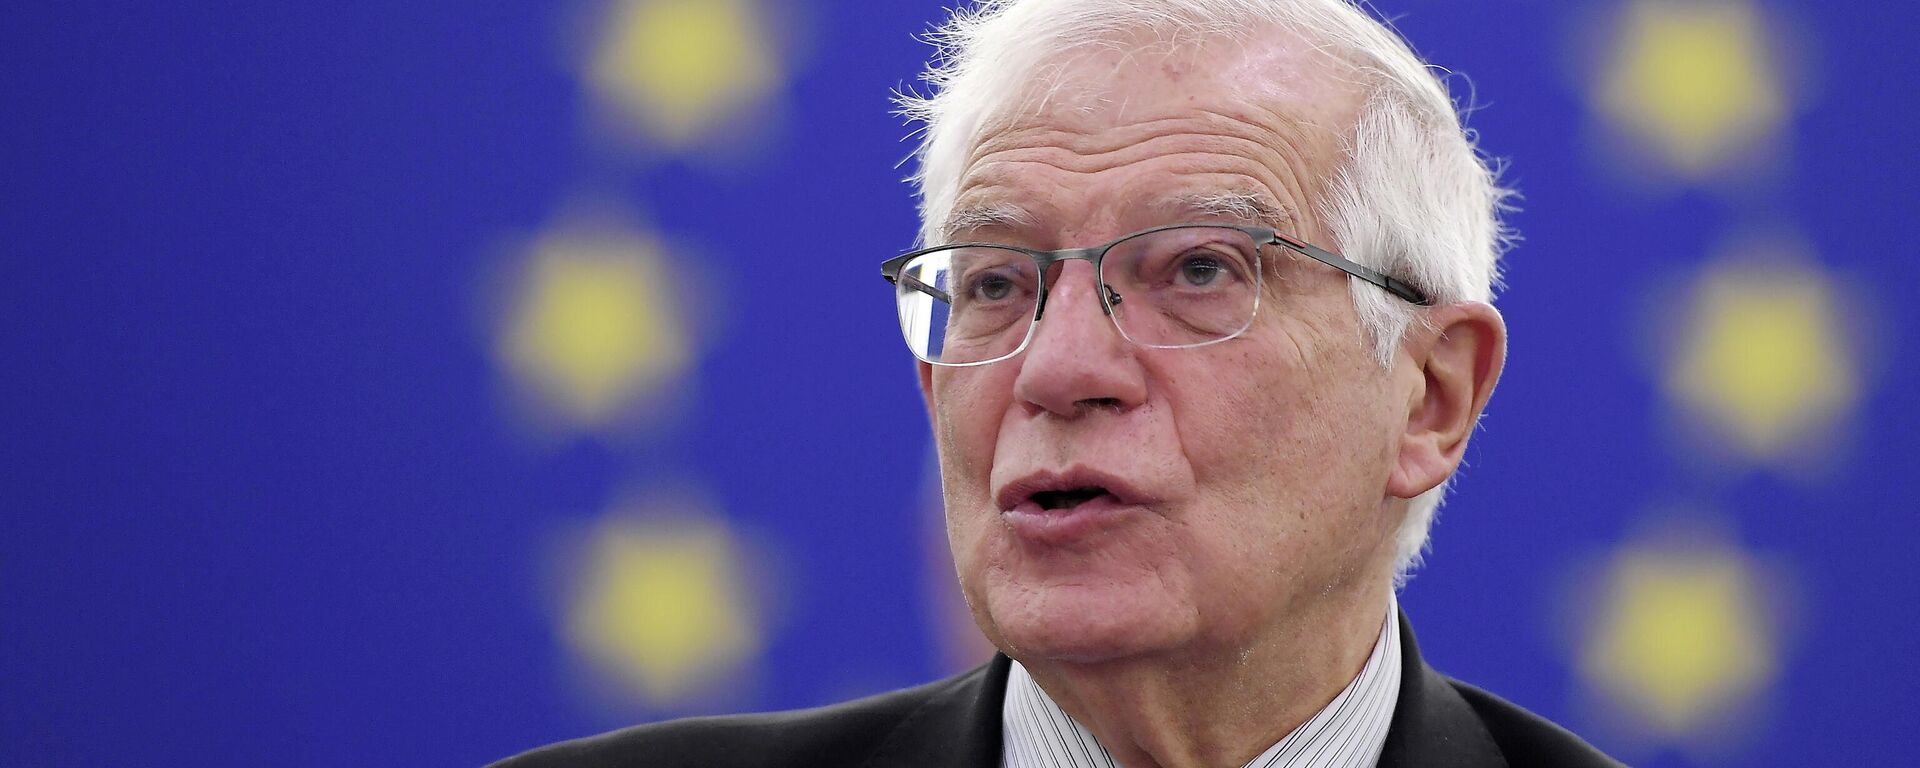 El Alto Representante de la UE para Política Exterior, Josep Borrell - Sputnik Mundo, 1920, 15.11.2021